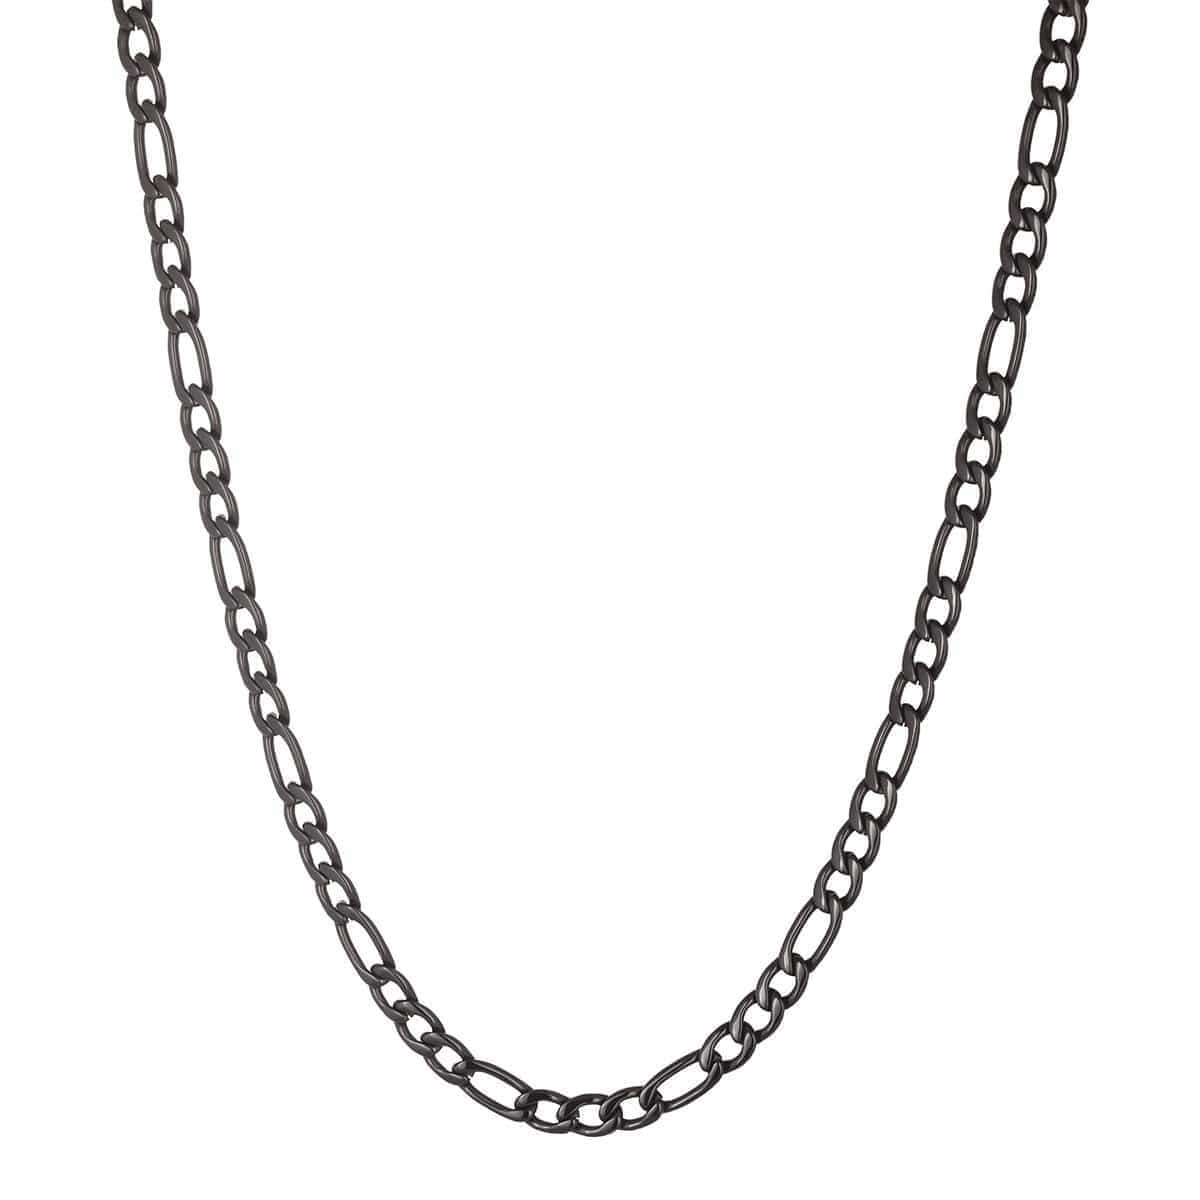 INOX JEWELRY Chains Black Stainless Steel 6mm Figaro Classic Chain